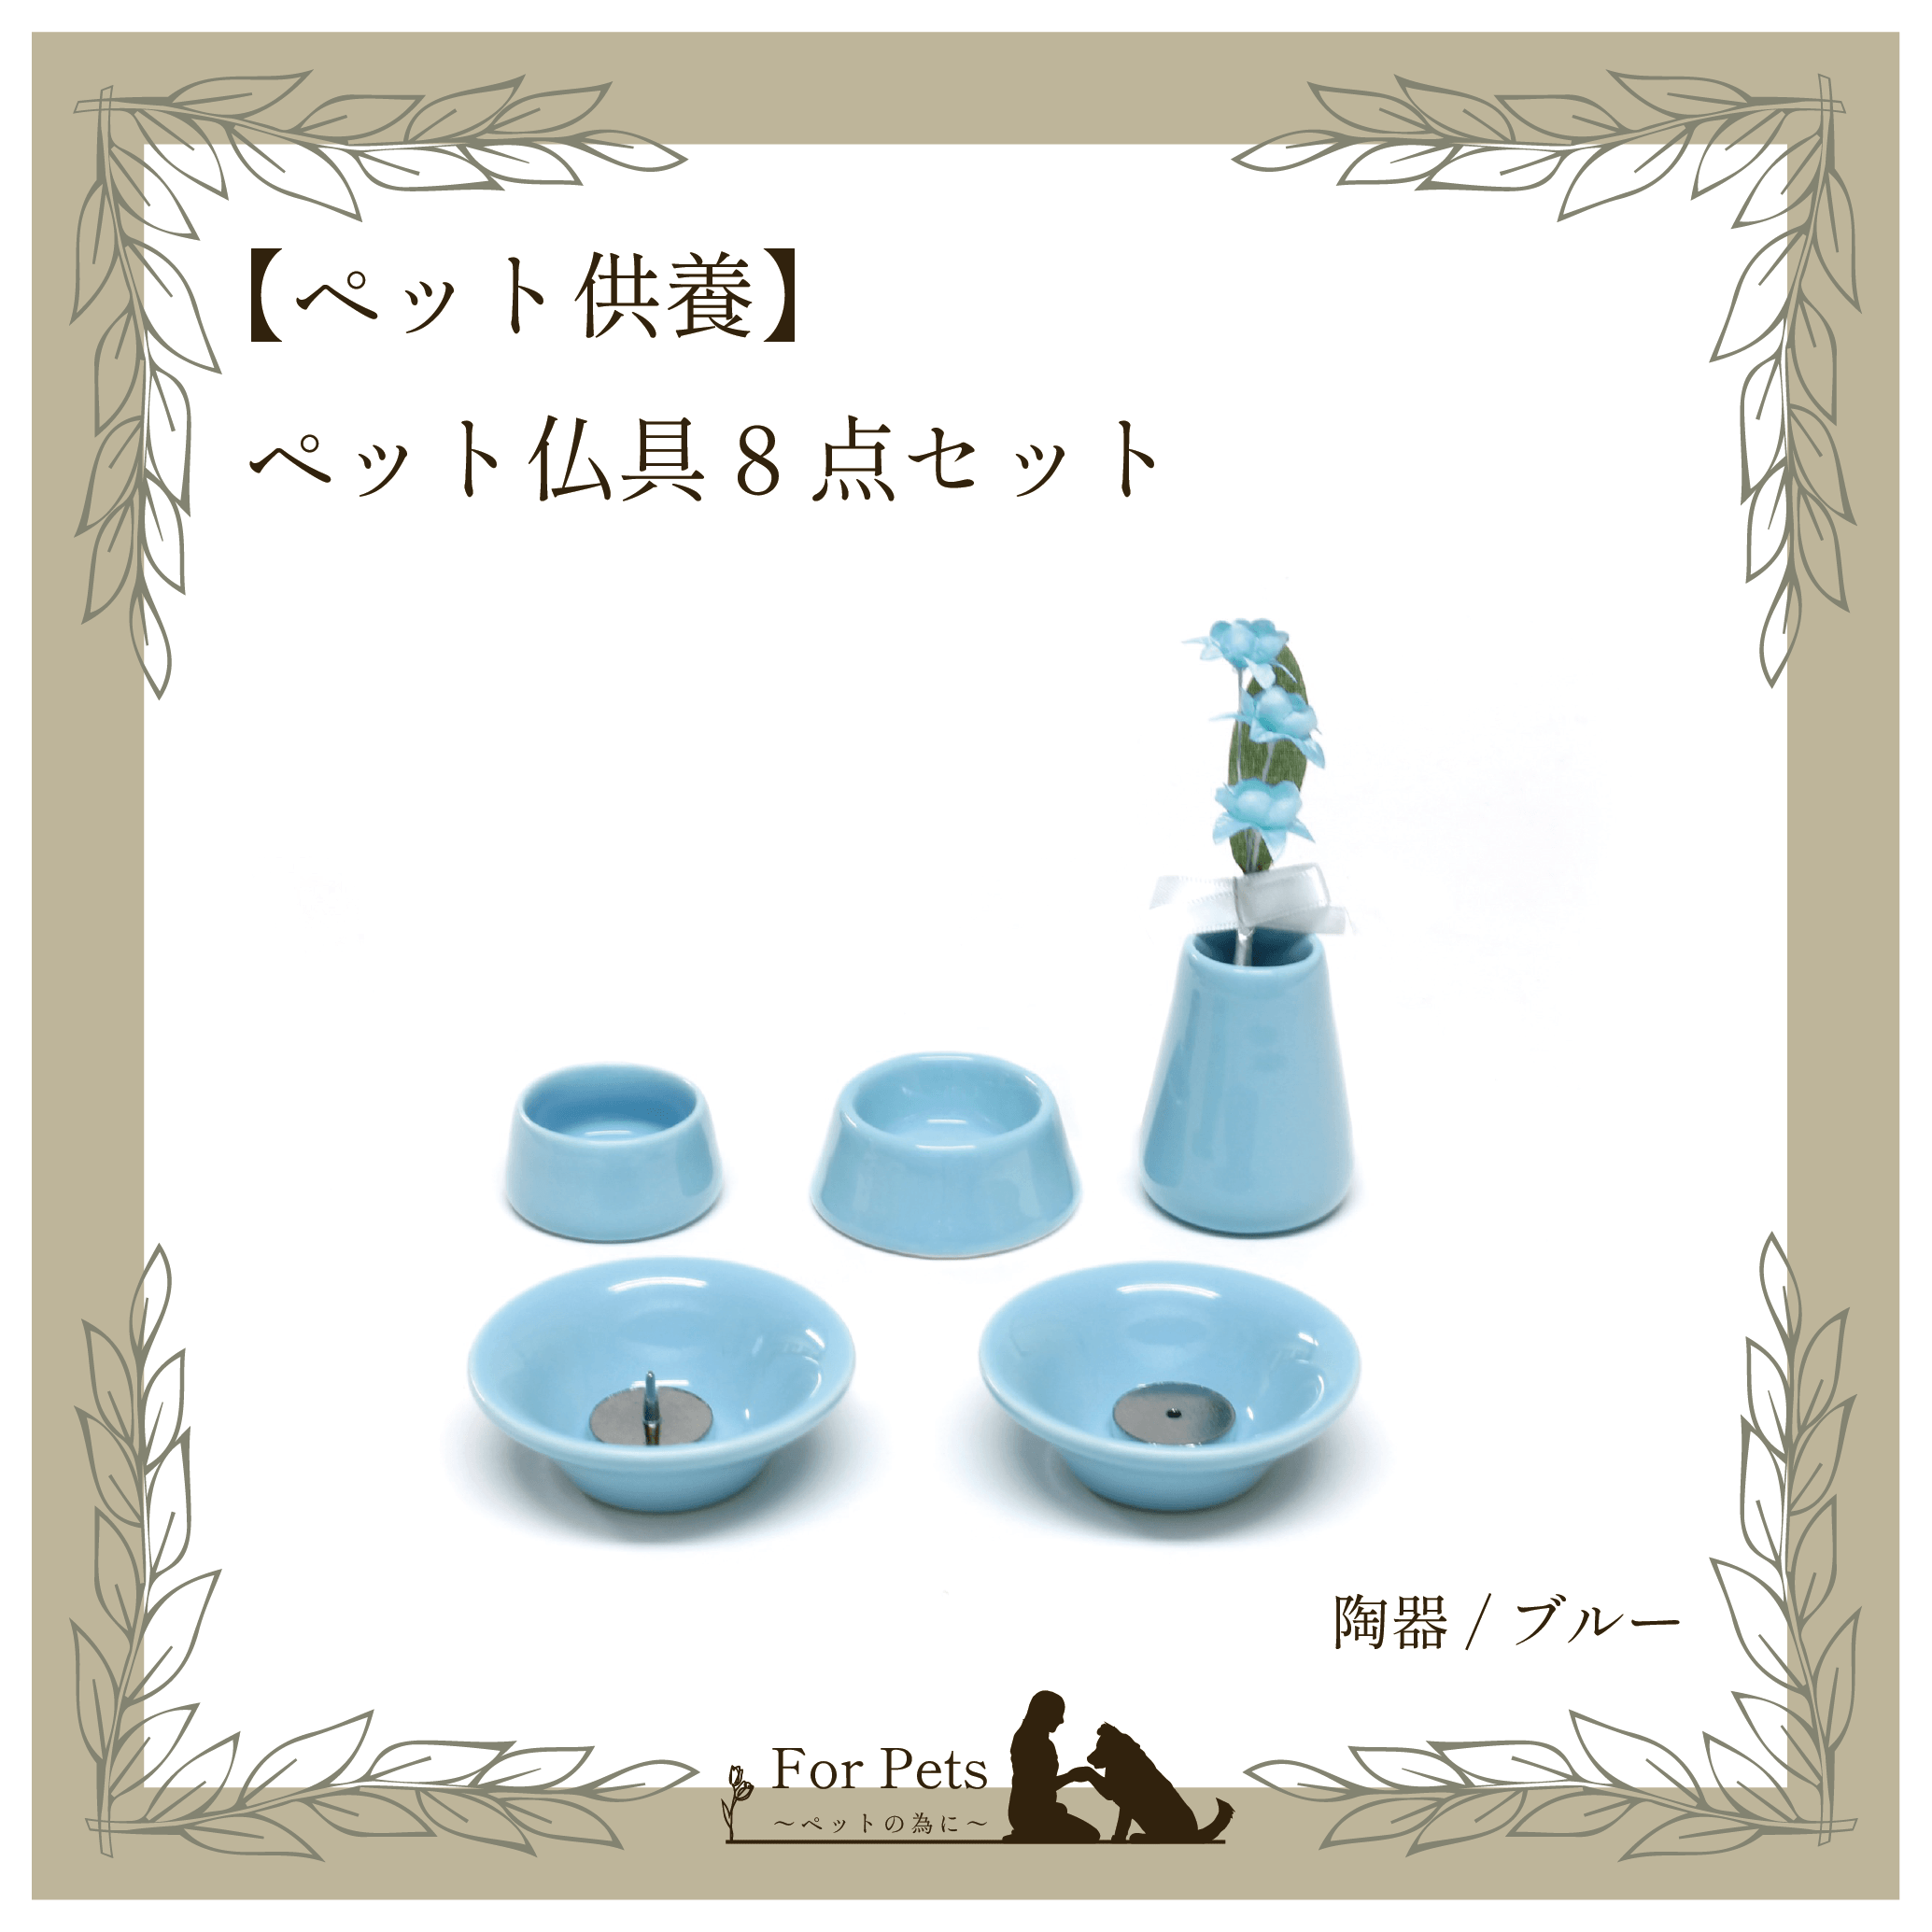 1517円 【NEW限定品】 おもいでのあかし オモイデノアカシ 仏具8点セット 陶器 ホワイト